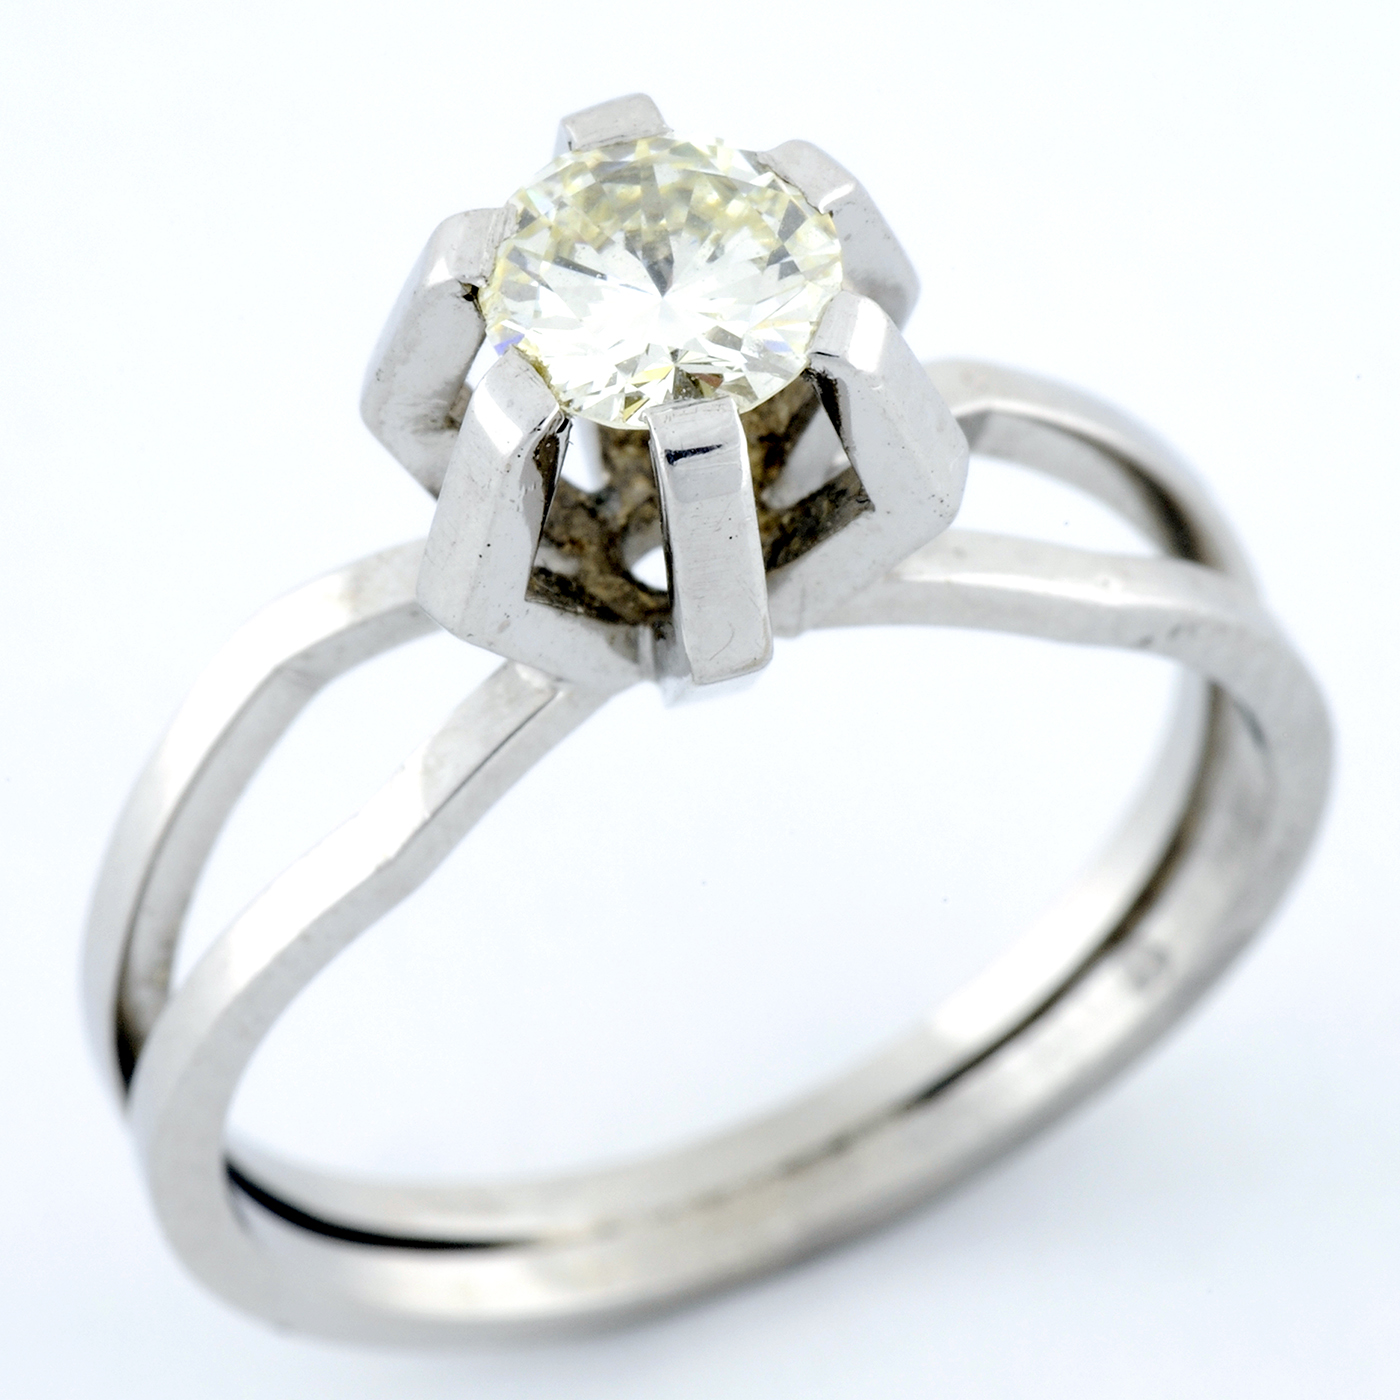 Solitario de Oro Blanco de 18k con Diamante Natural talla Brillante de 0,51 ct. (L-SI1). Certificado IGE.